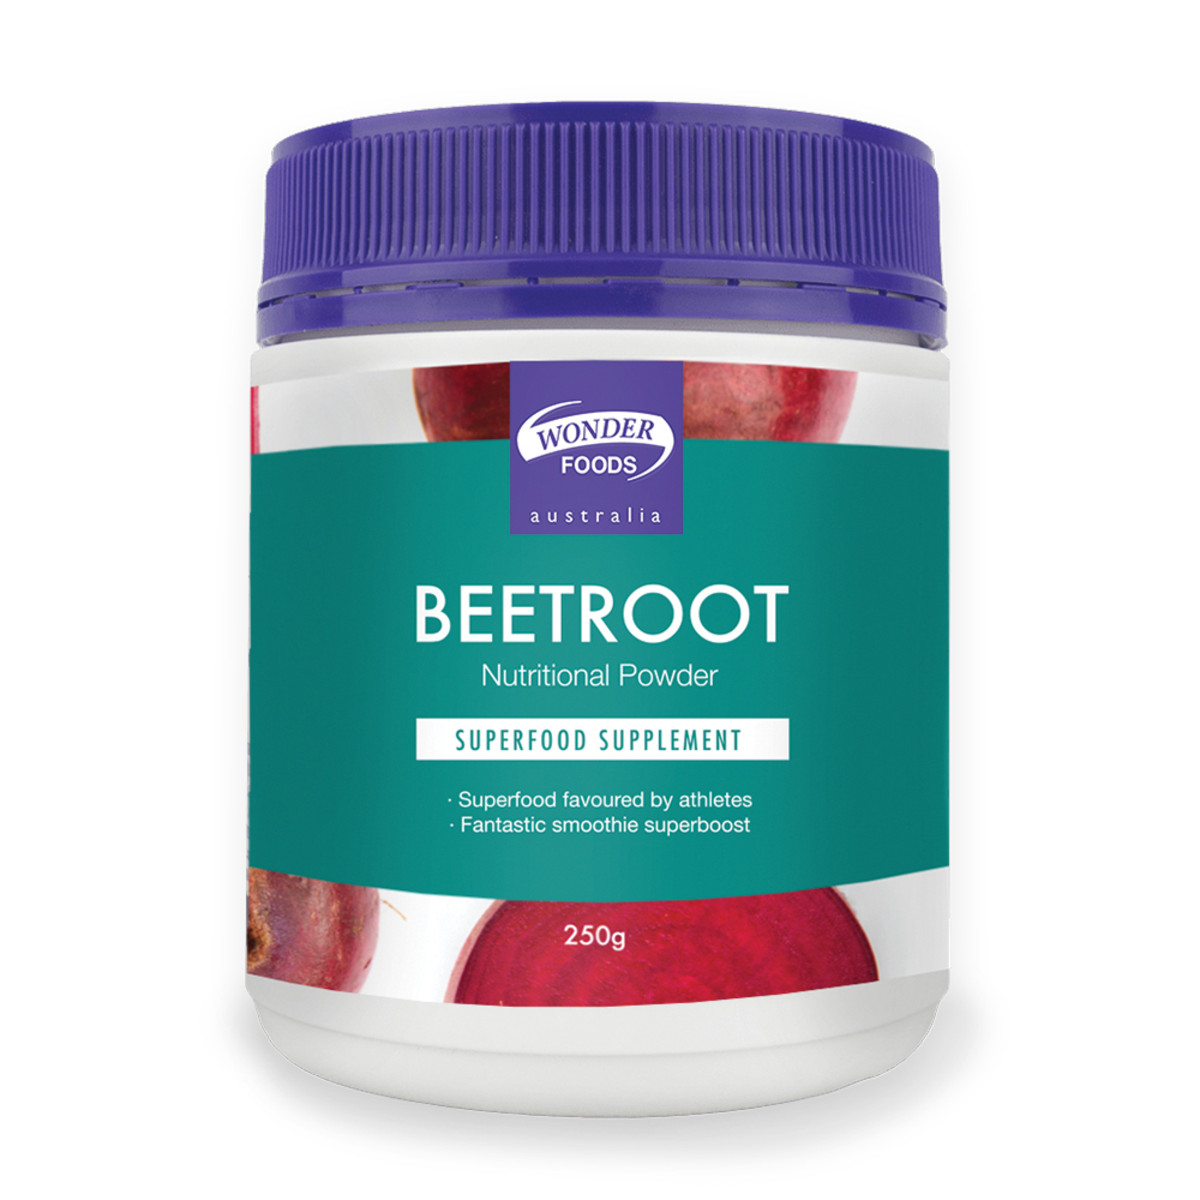 WONDER FOODS - Beetroot Nutritional